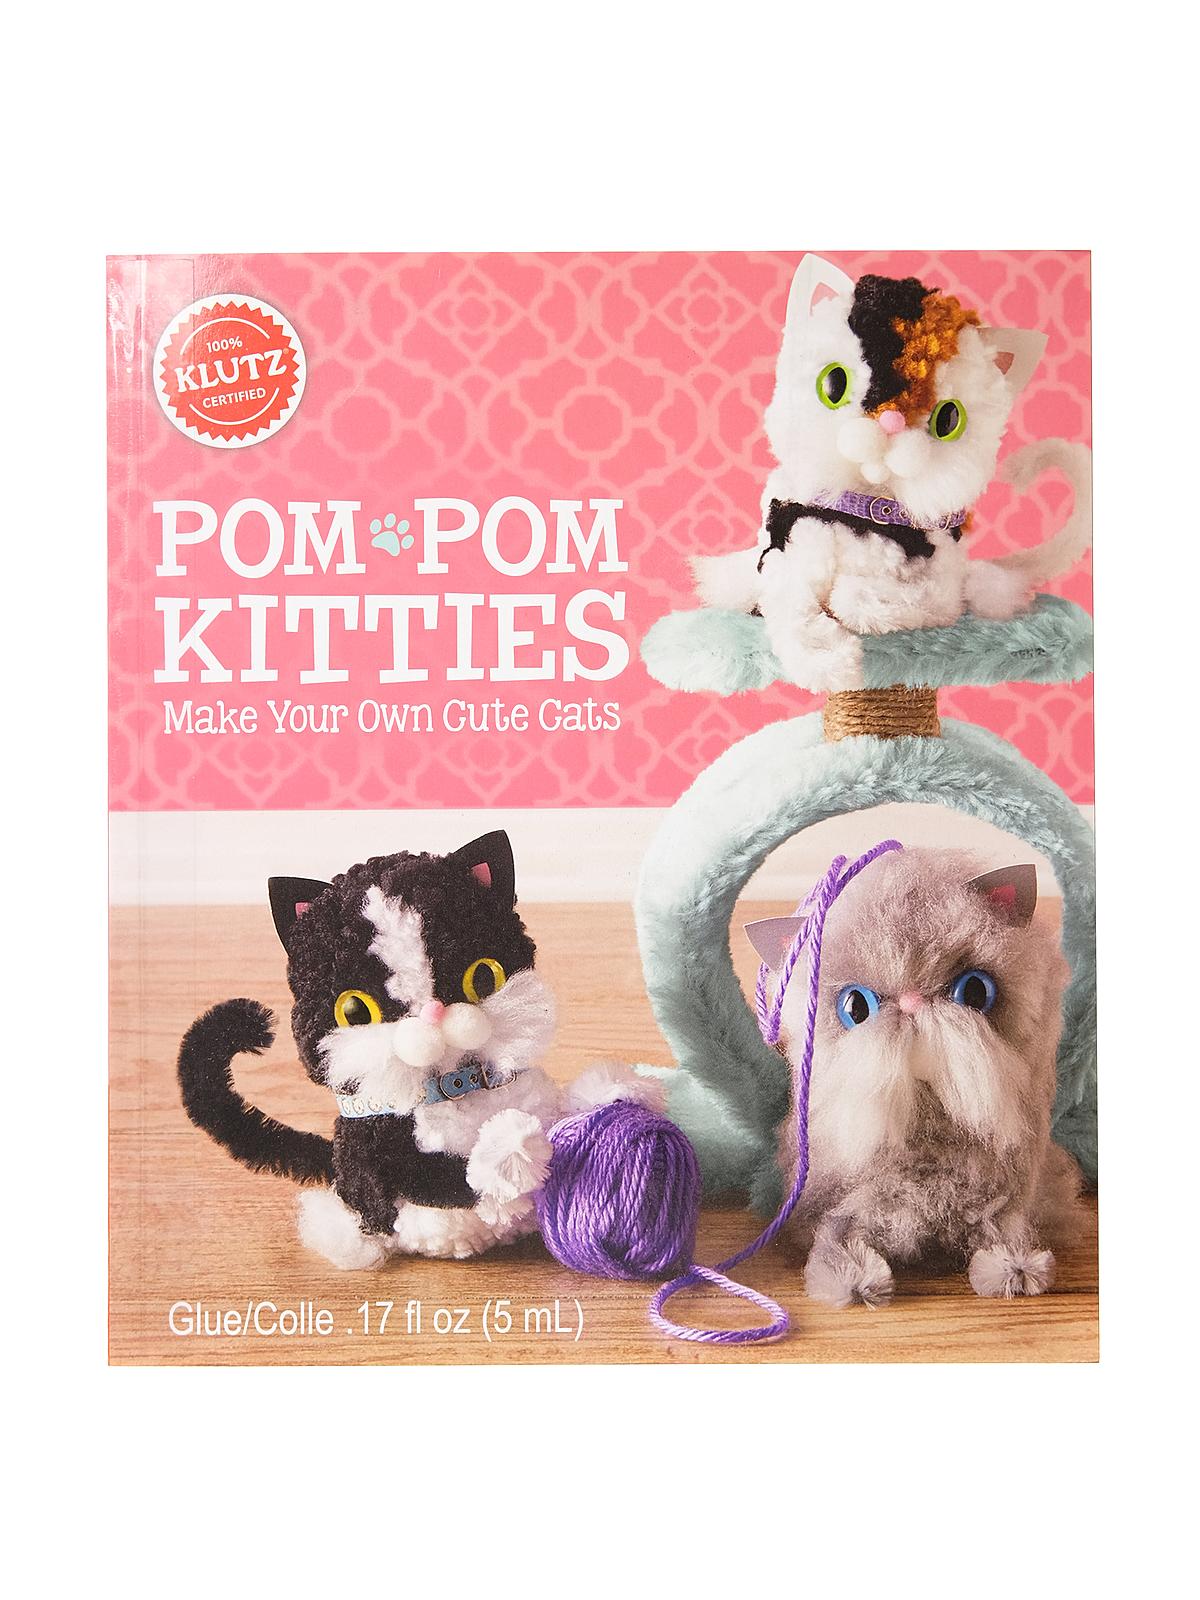 Pom-pom Kitties Each